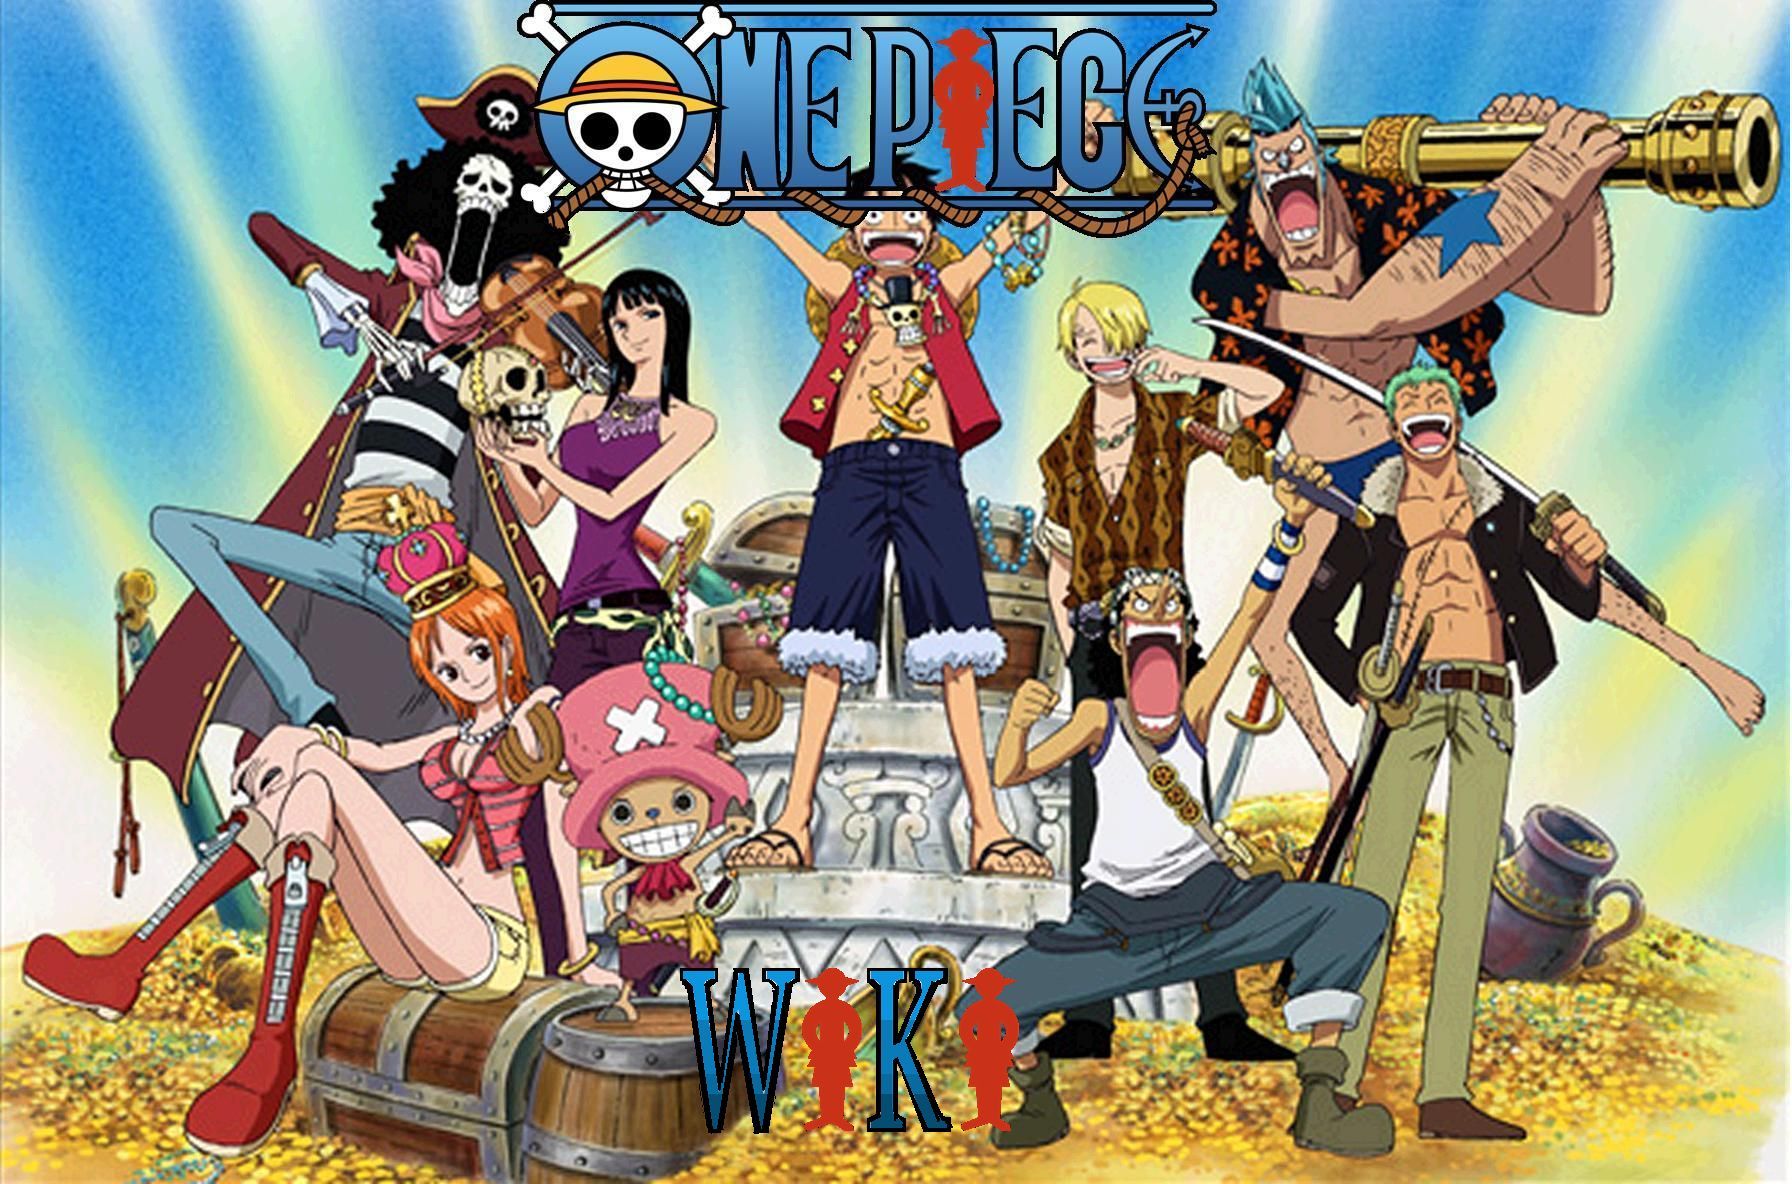 5079 - One Piece, ¿cuánto sabes de esta magnífica serie?